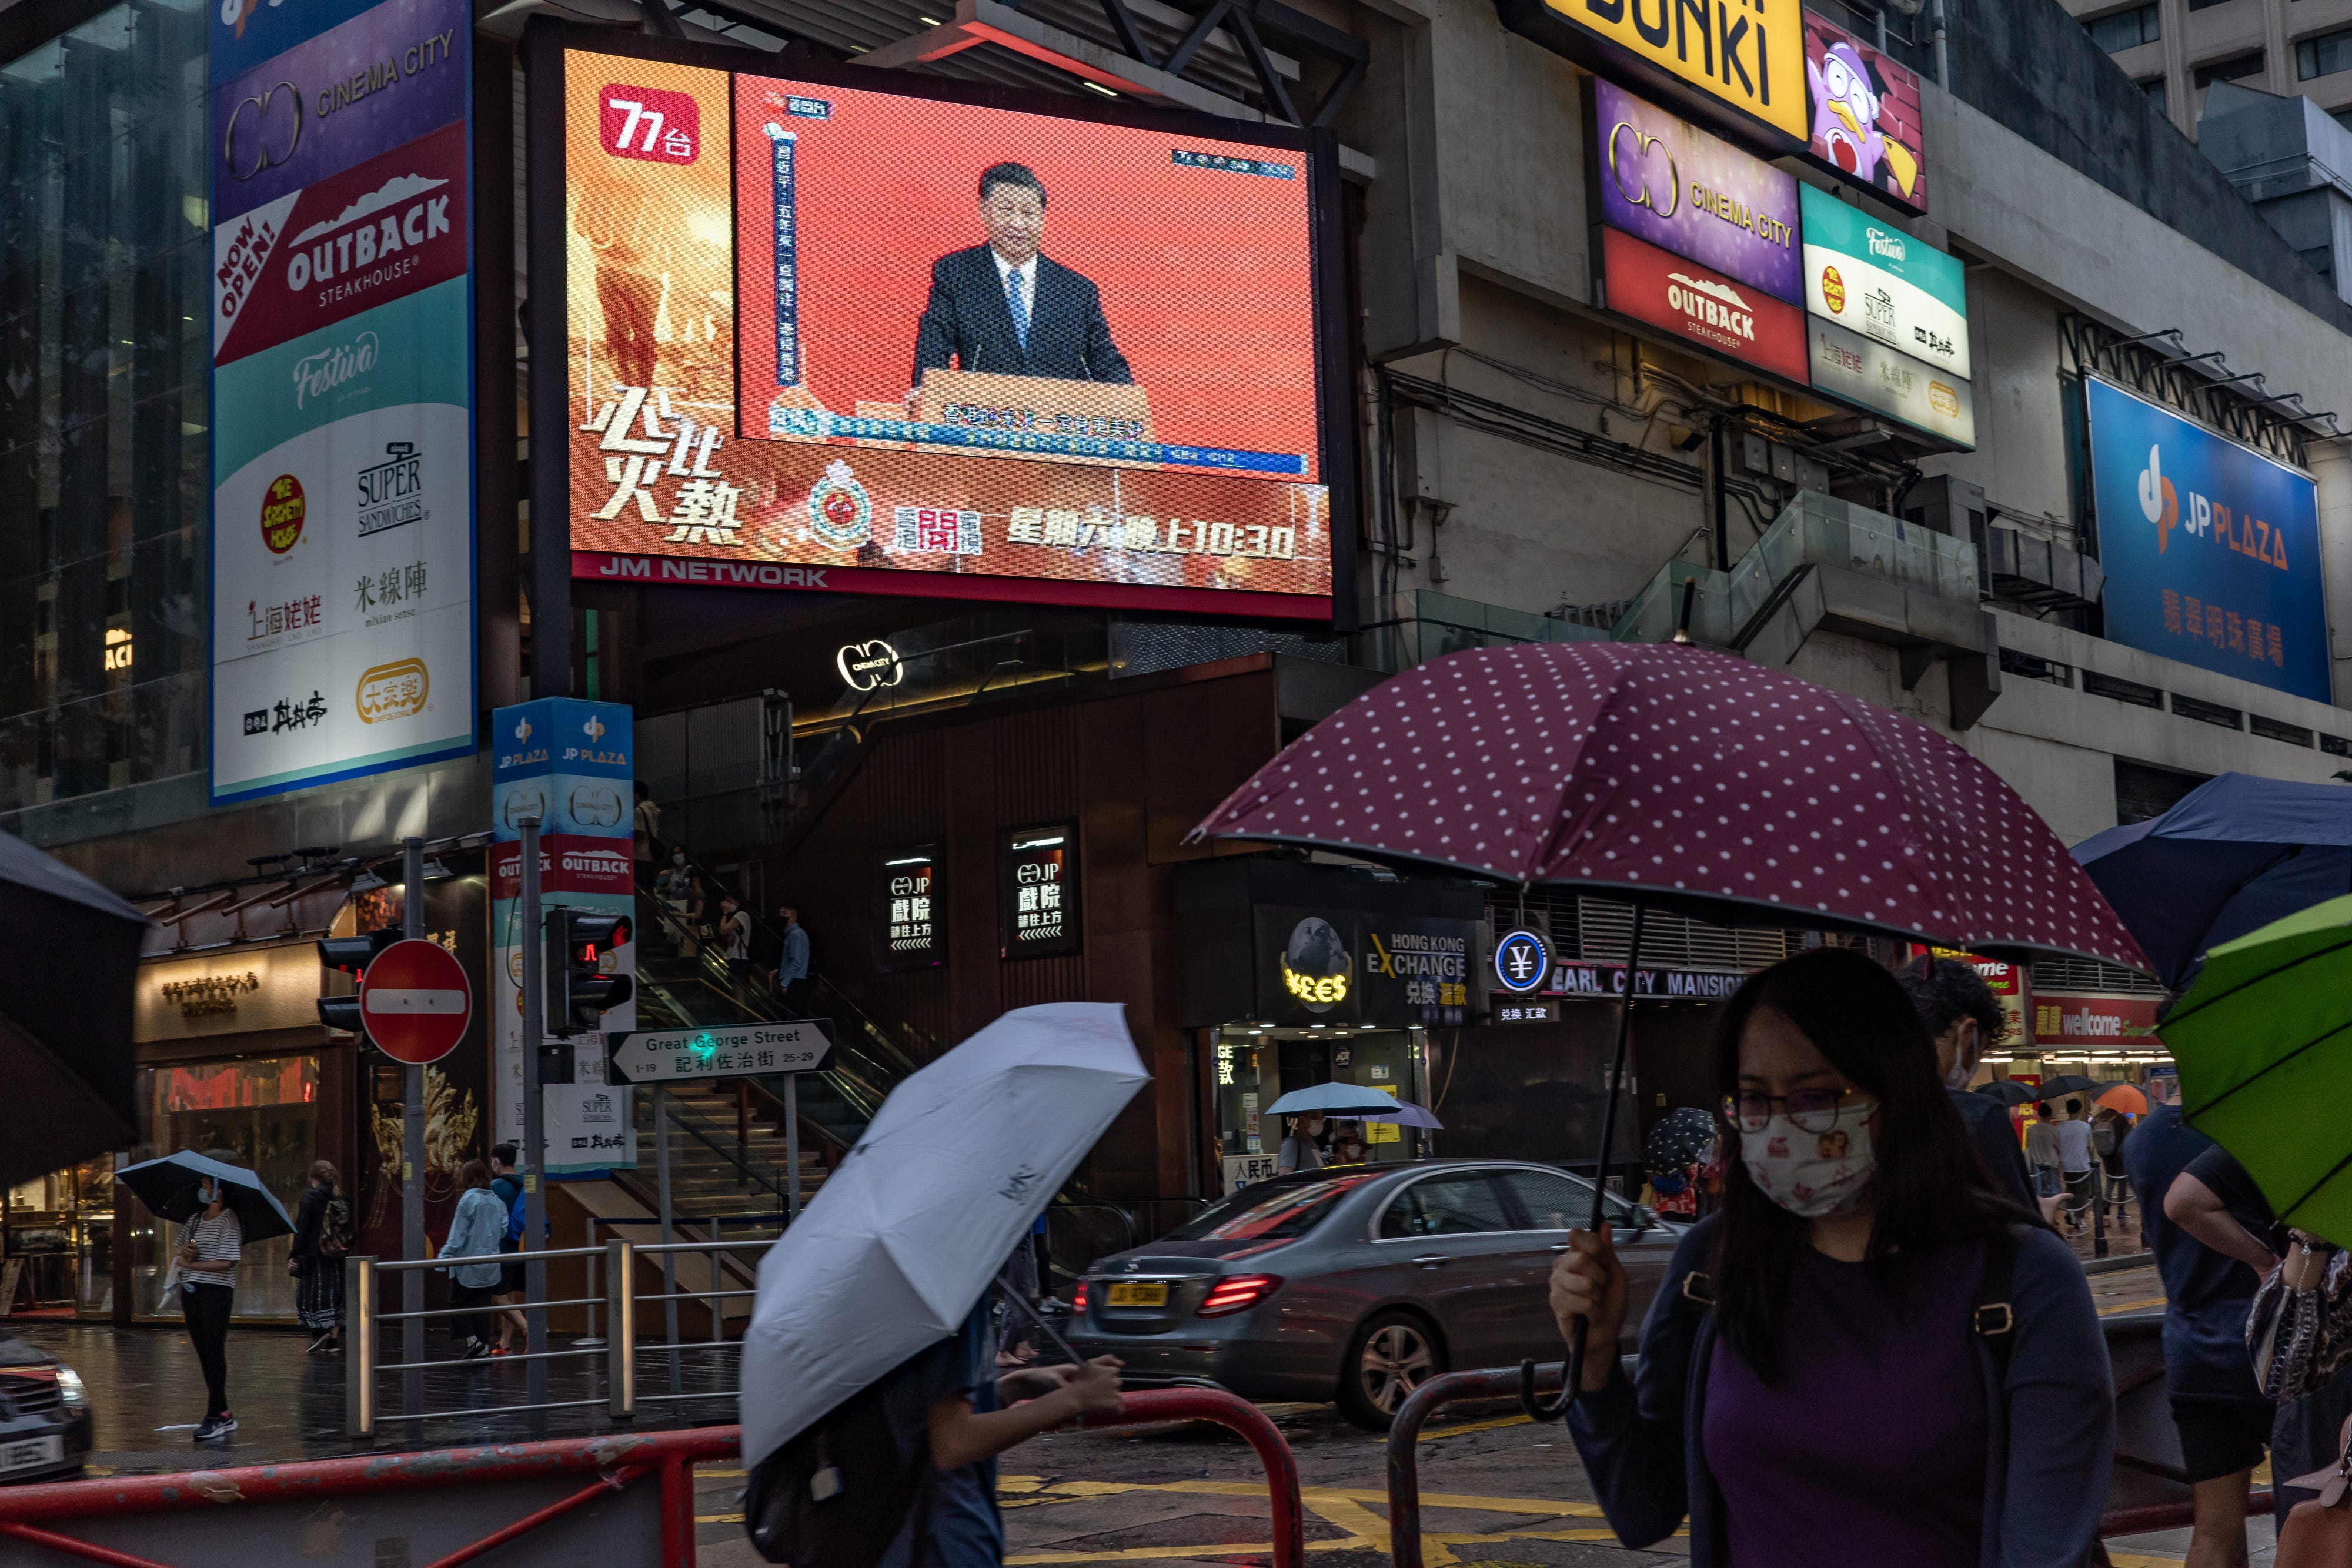 Der chinesische Staatspräsident Xi Jinping spricht während einer Pressekonferenz, die am 30. Juni 2022 in Hongkong, China, auf einem Fernsehbildschirm in einem Einkaufsviertel gezeigt wird.  Hongkong feiert am 1. Juli den 25. Jahrestag seiner Übergabe von Großbritannien an China.